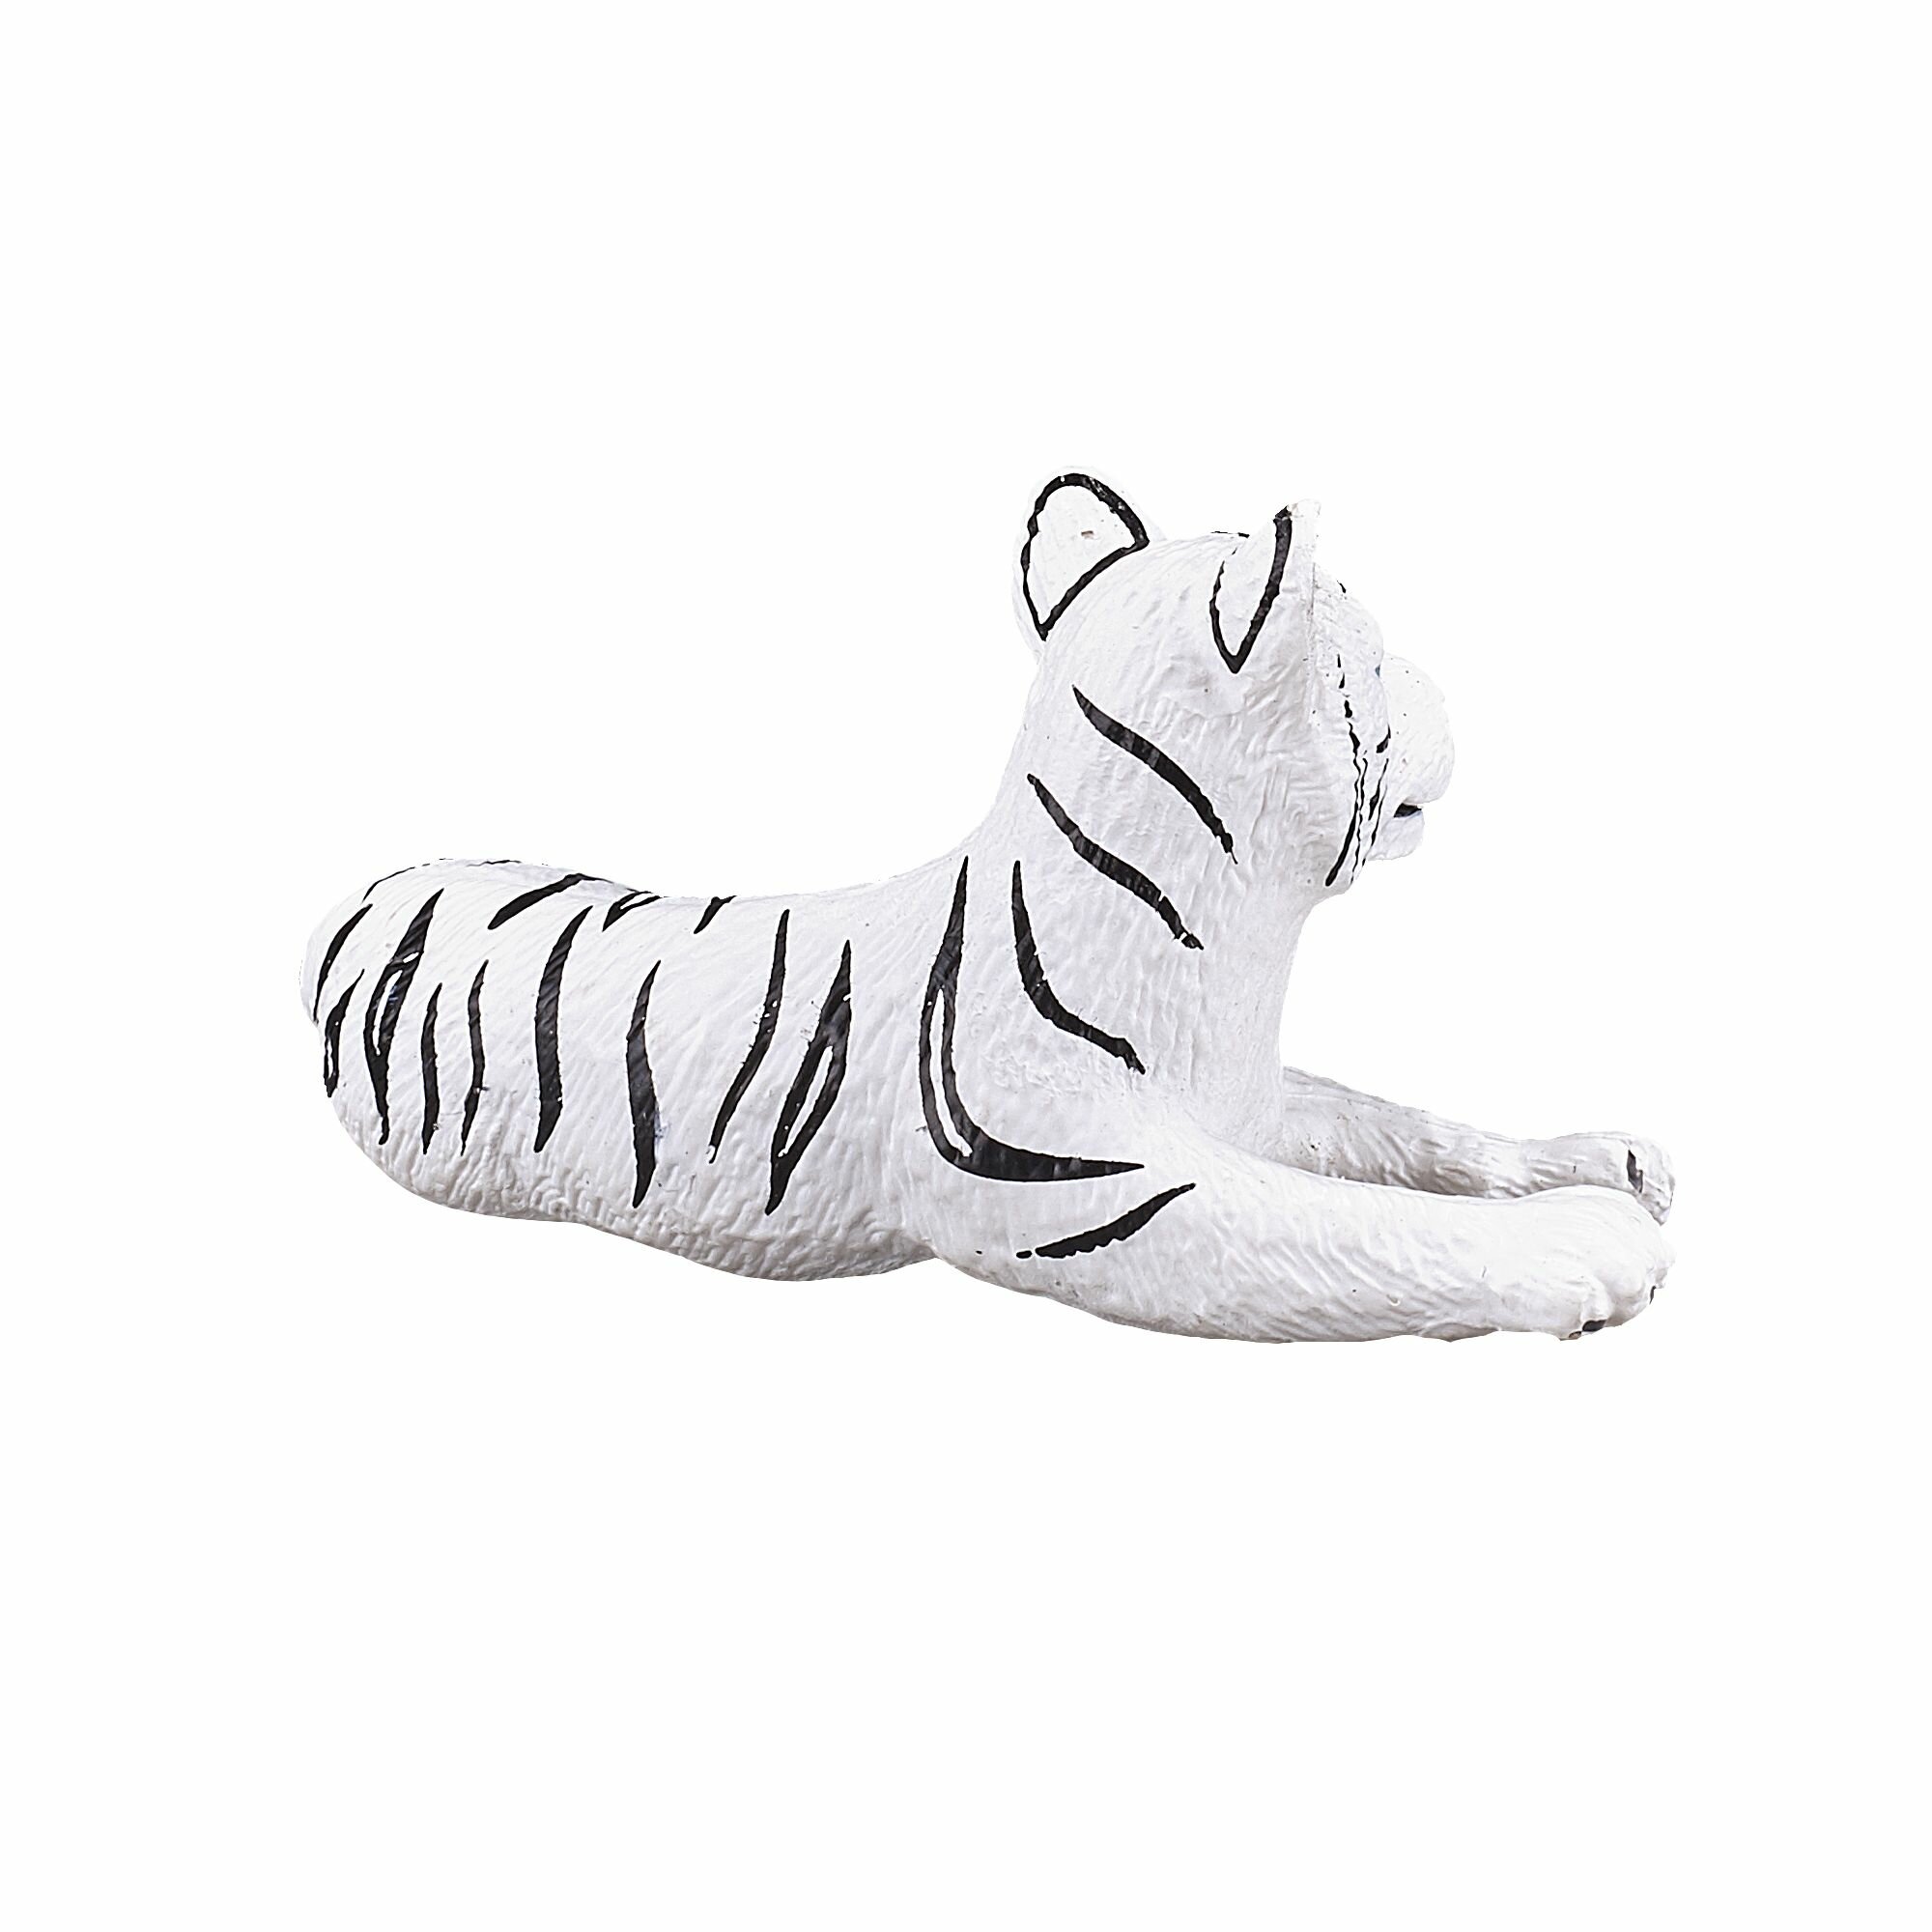 Фигурка Белый тигренок (лежащий), AMW2028